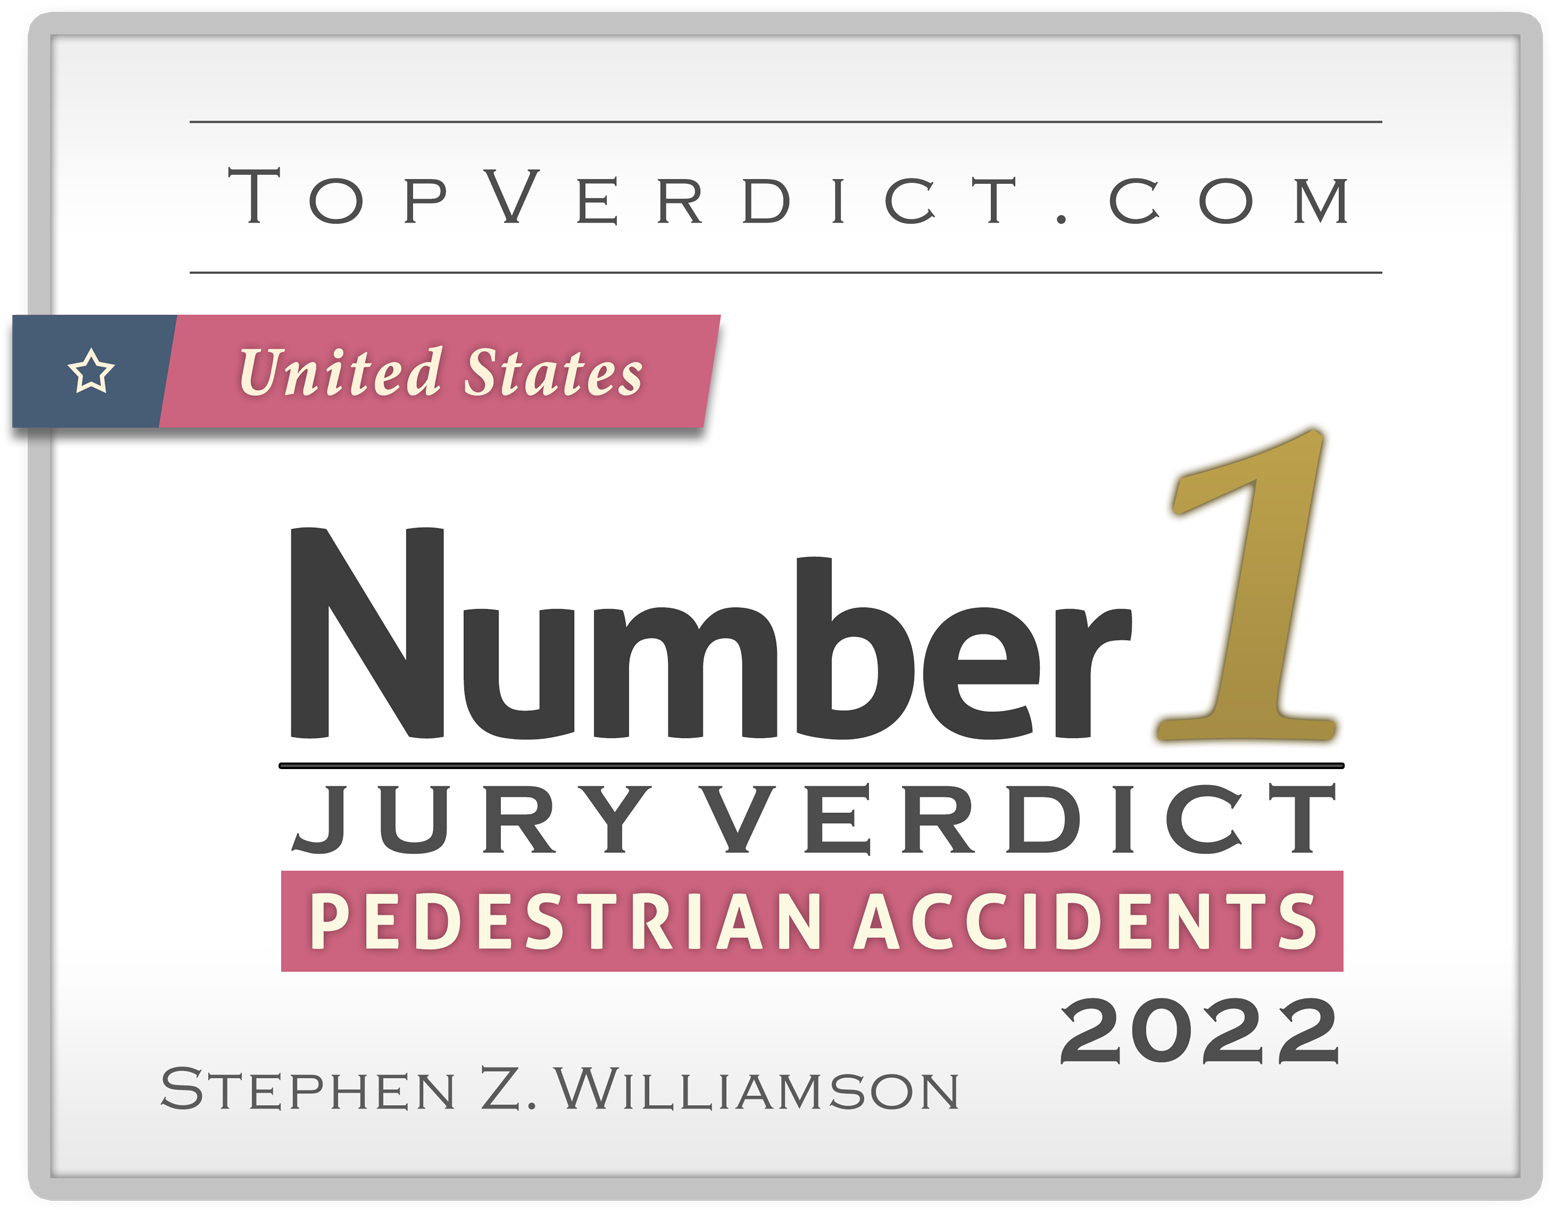 Top10 Jury Verdicts